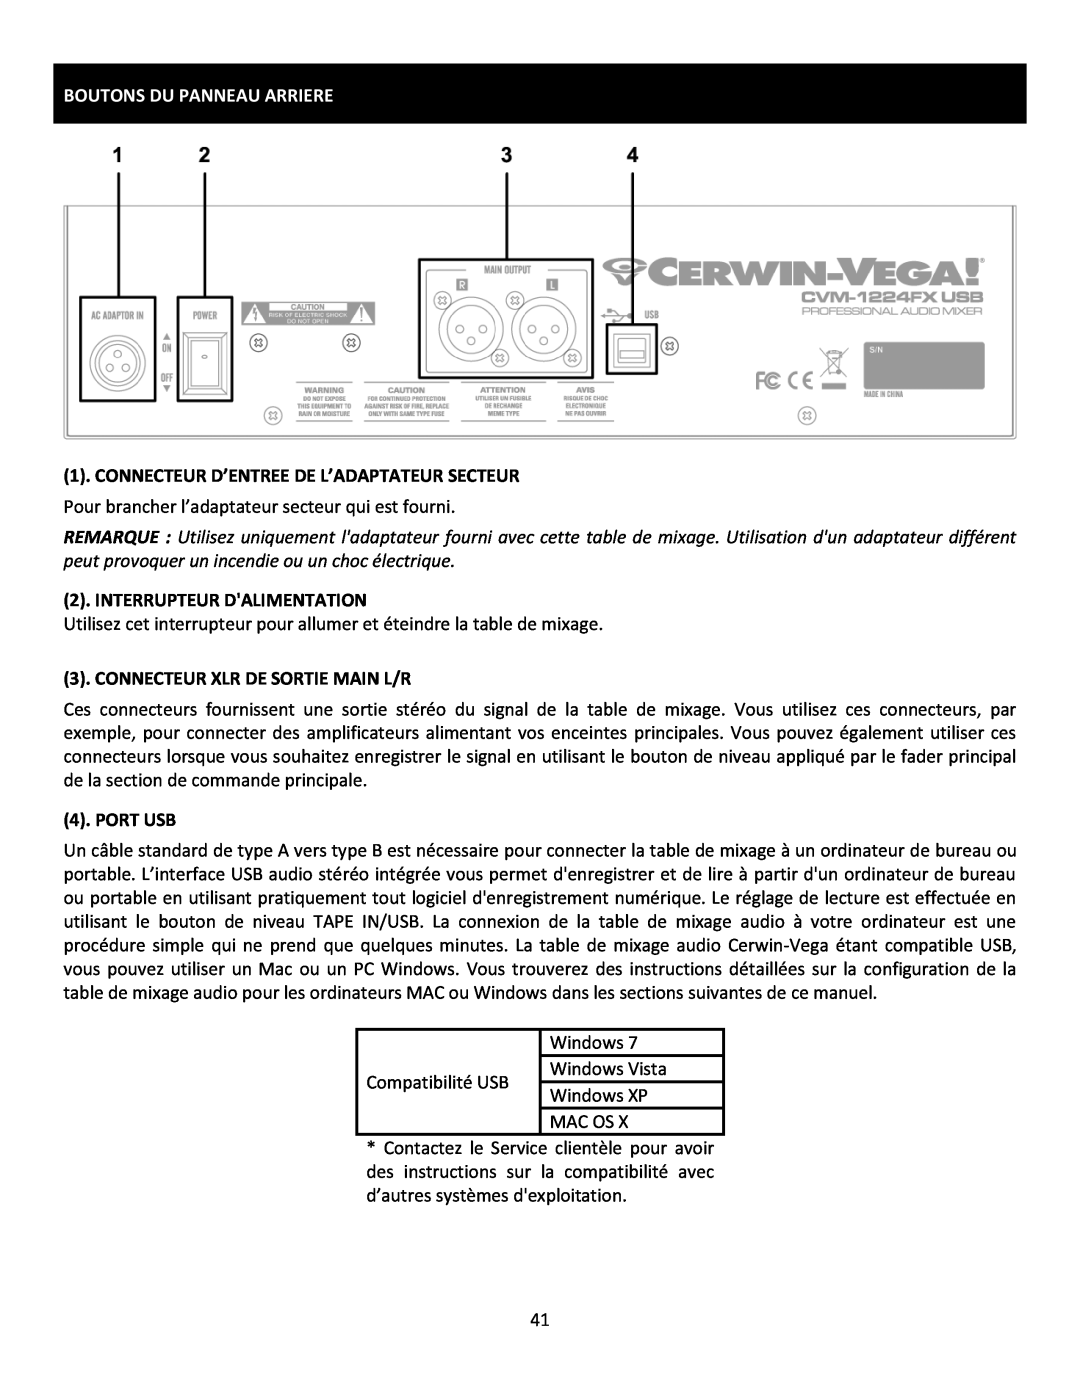 Cerwin-Vega CVM-1224FXUSB manual Boutons Du Panneau Arriere, Connecteur D’Entree De L’Adaptateur Secteur, Port Usb 